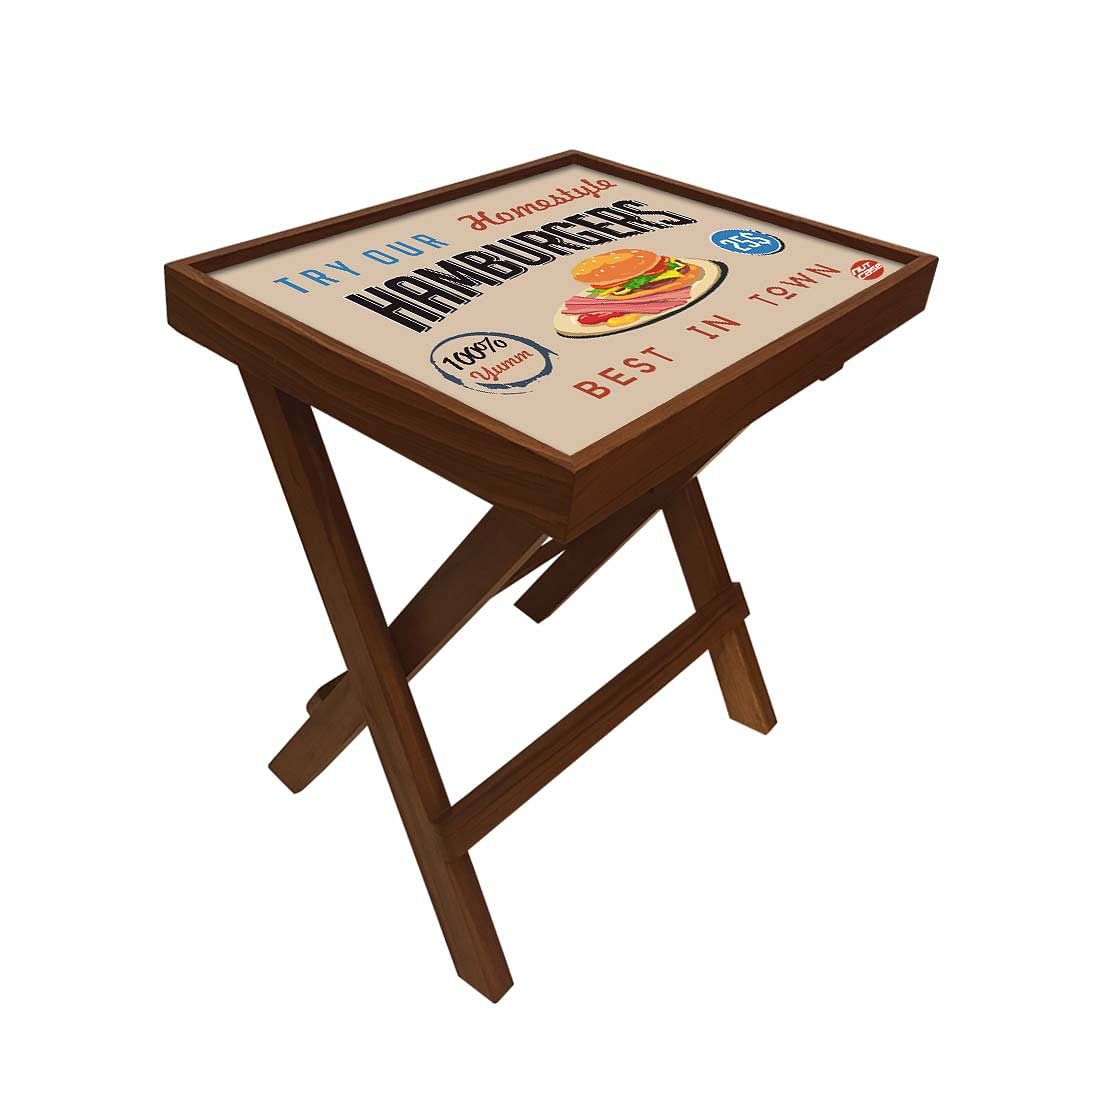 Folding Side Table - Teak Wood - Retro Diner Style Burgers Nutcase